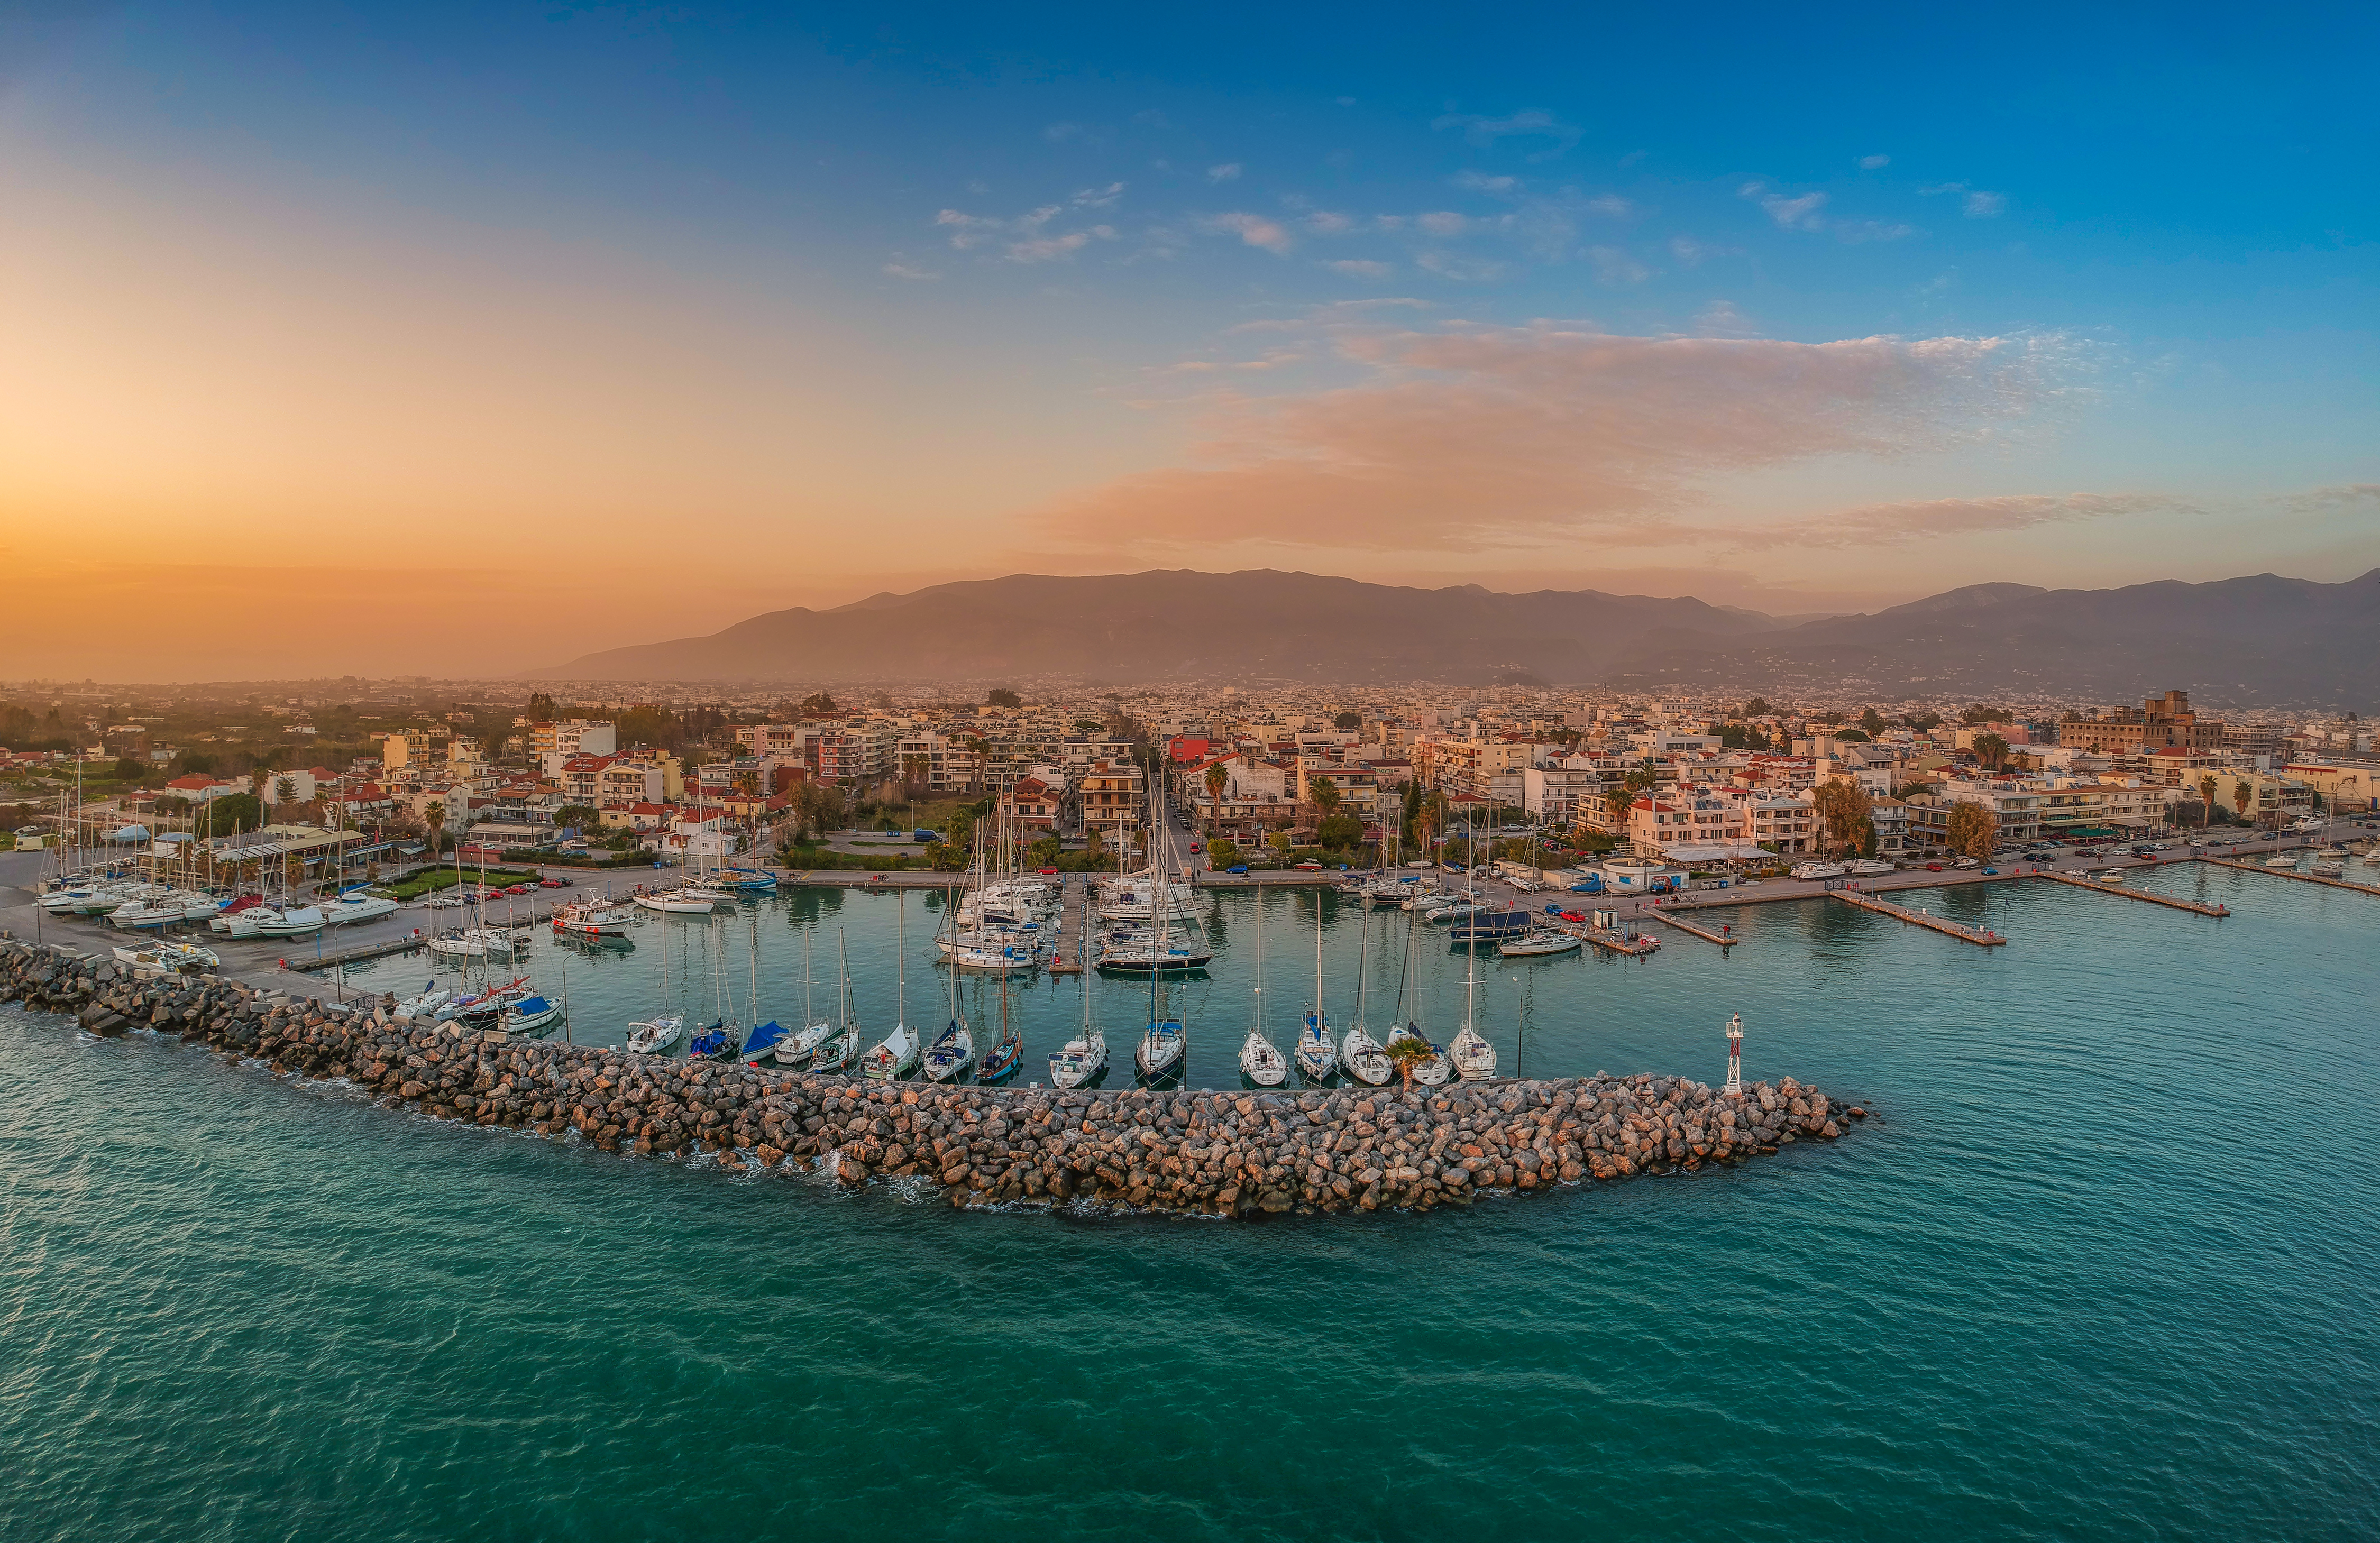 Arial view of Kalamata, Greece